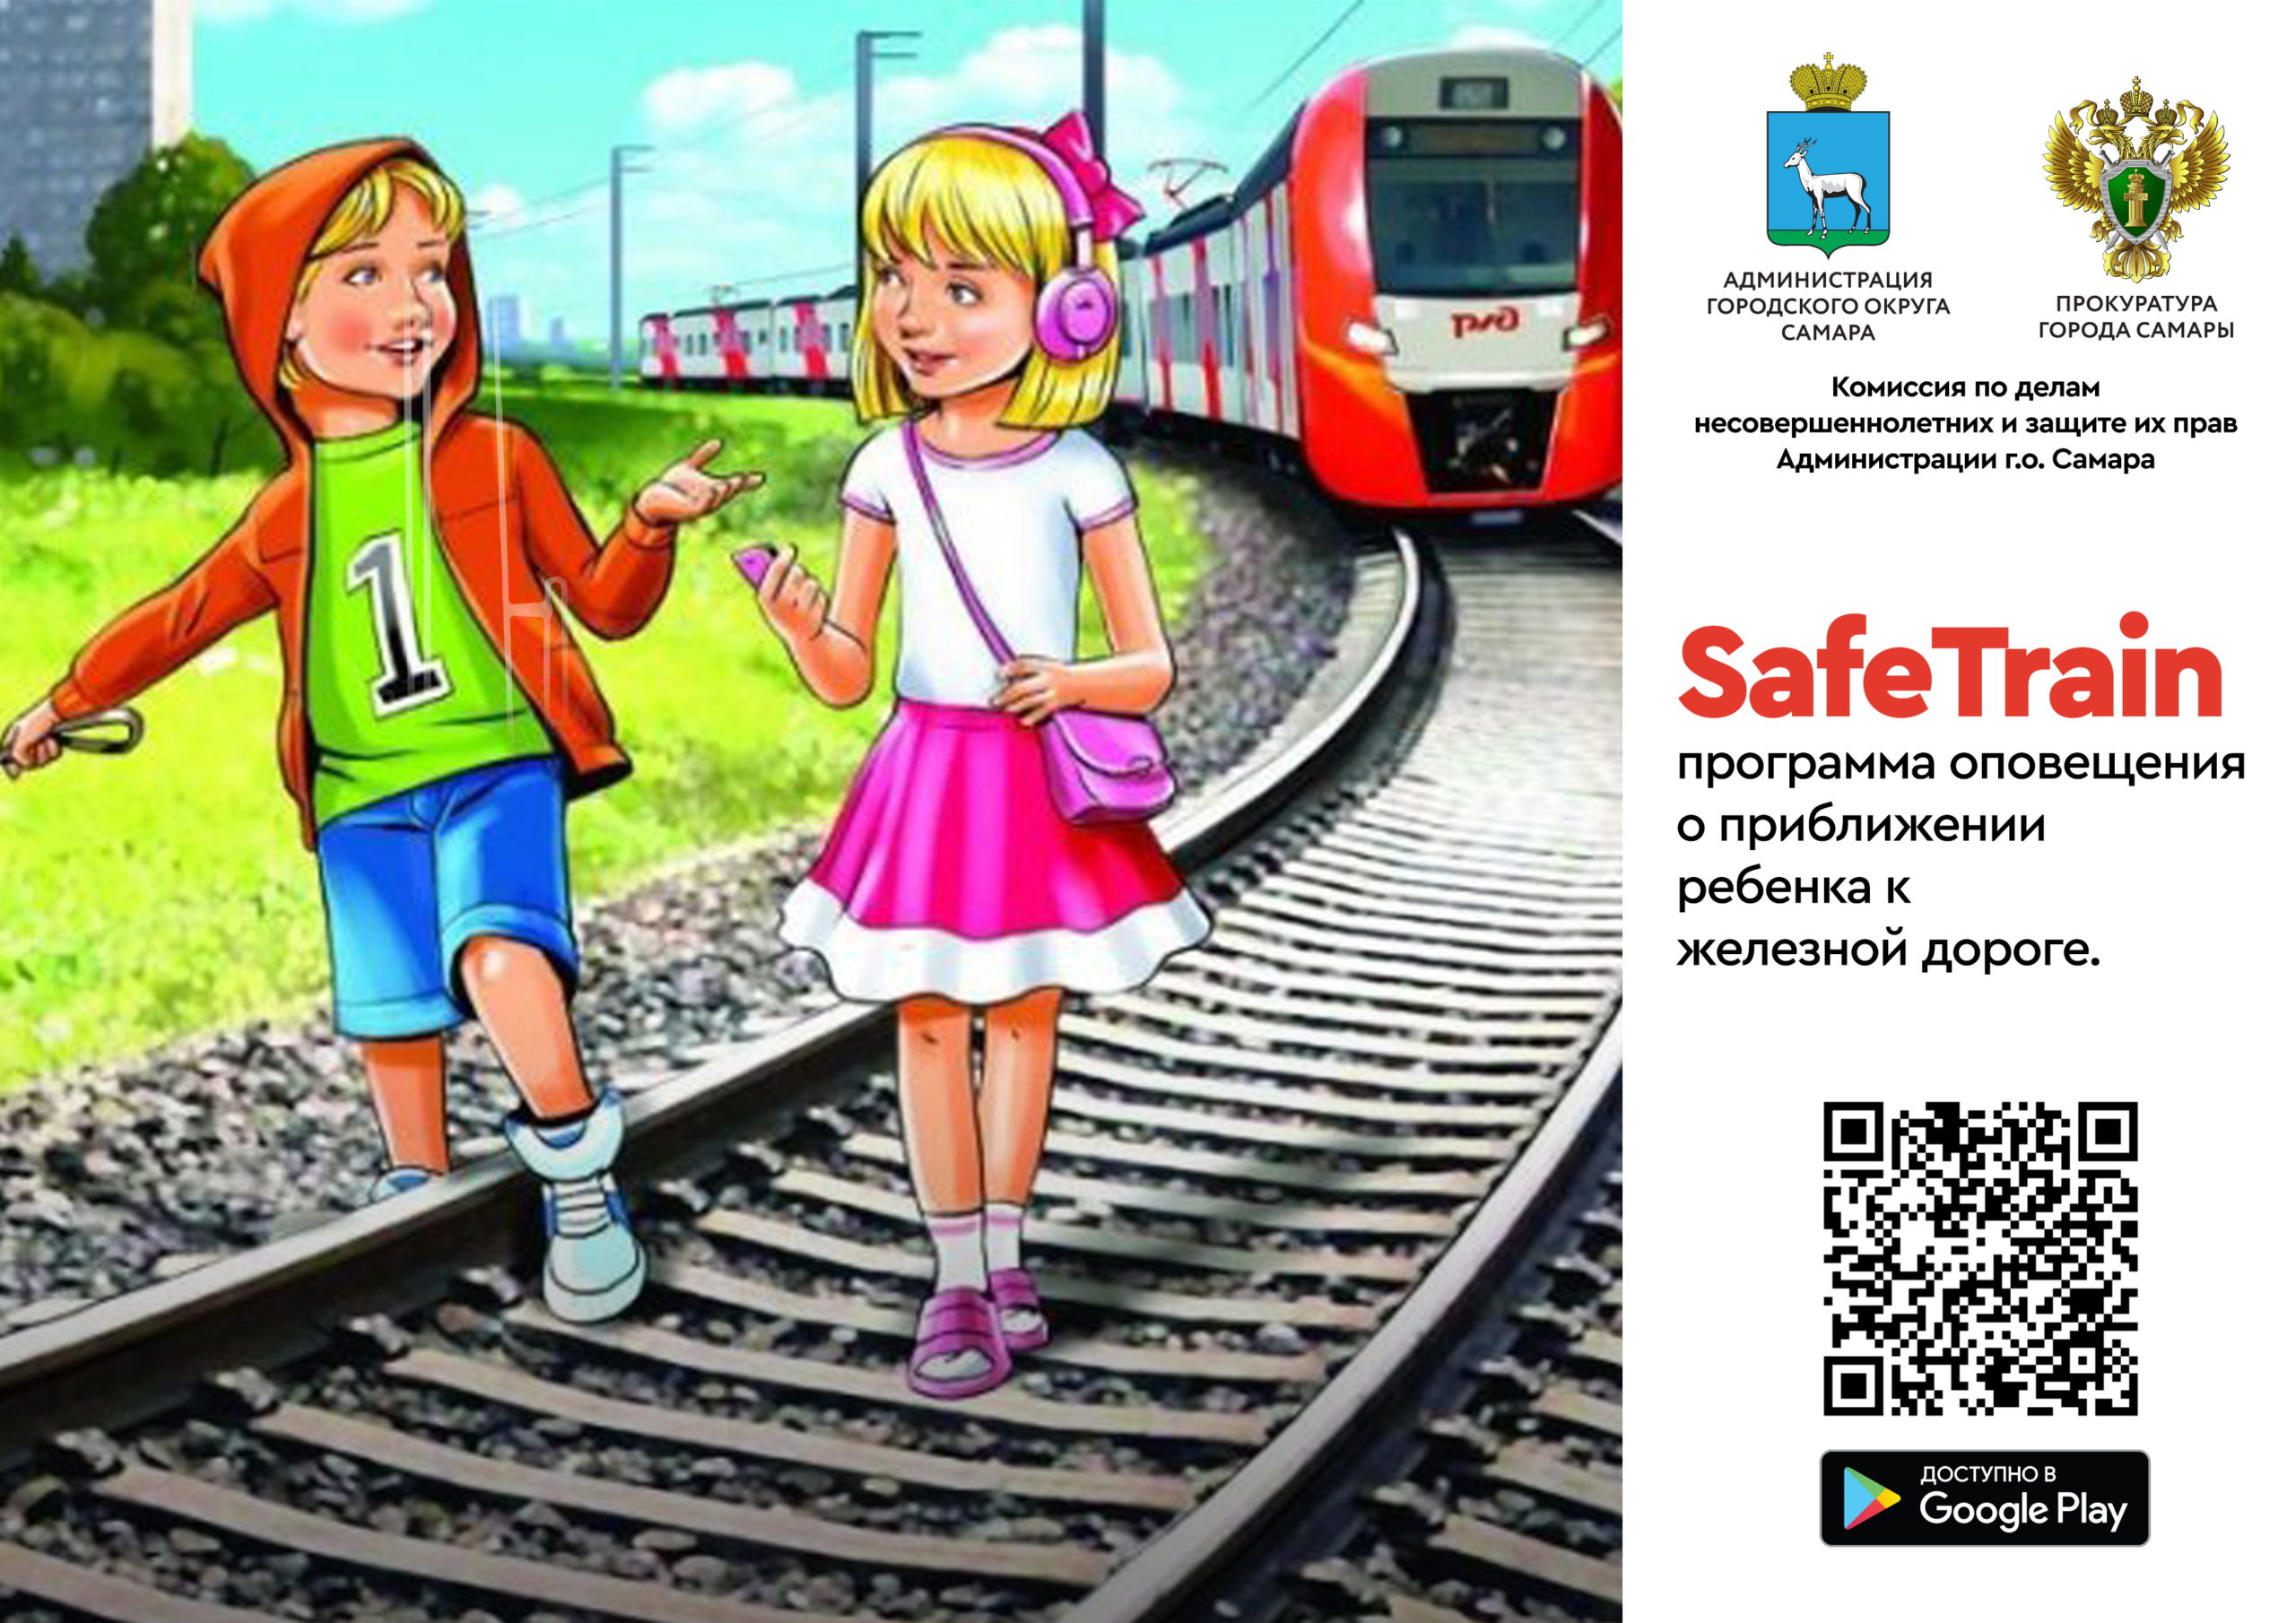 Программа оповещения о приближении ребенка к железной дороге